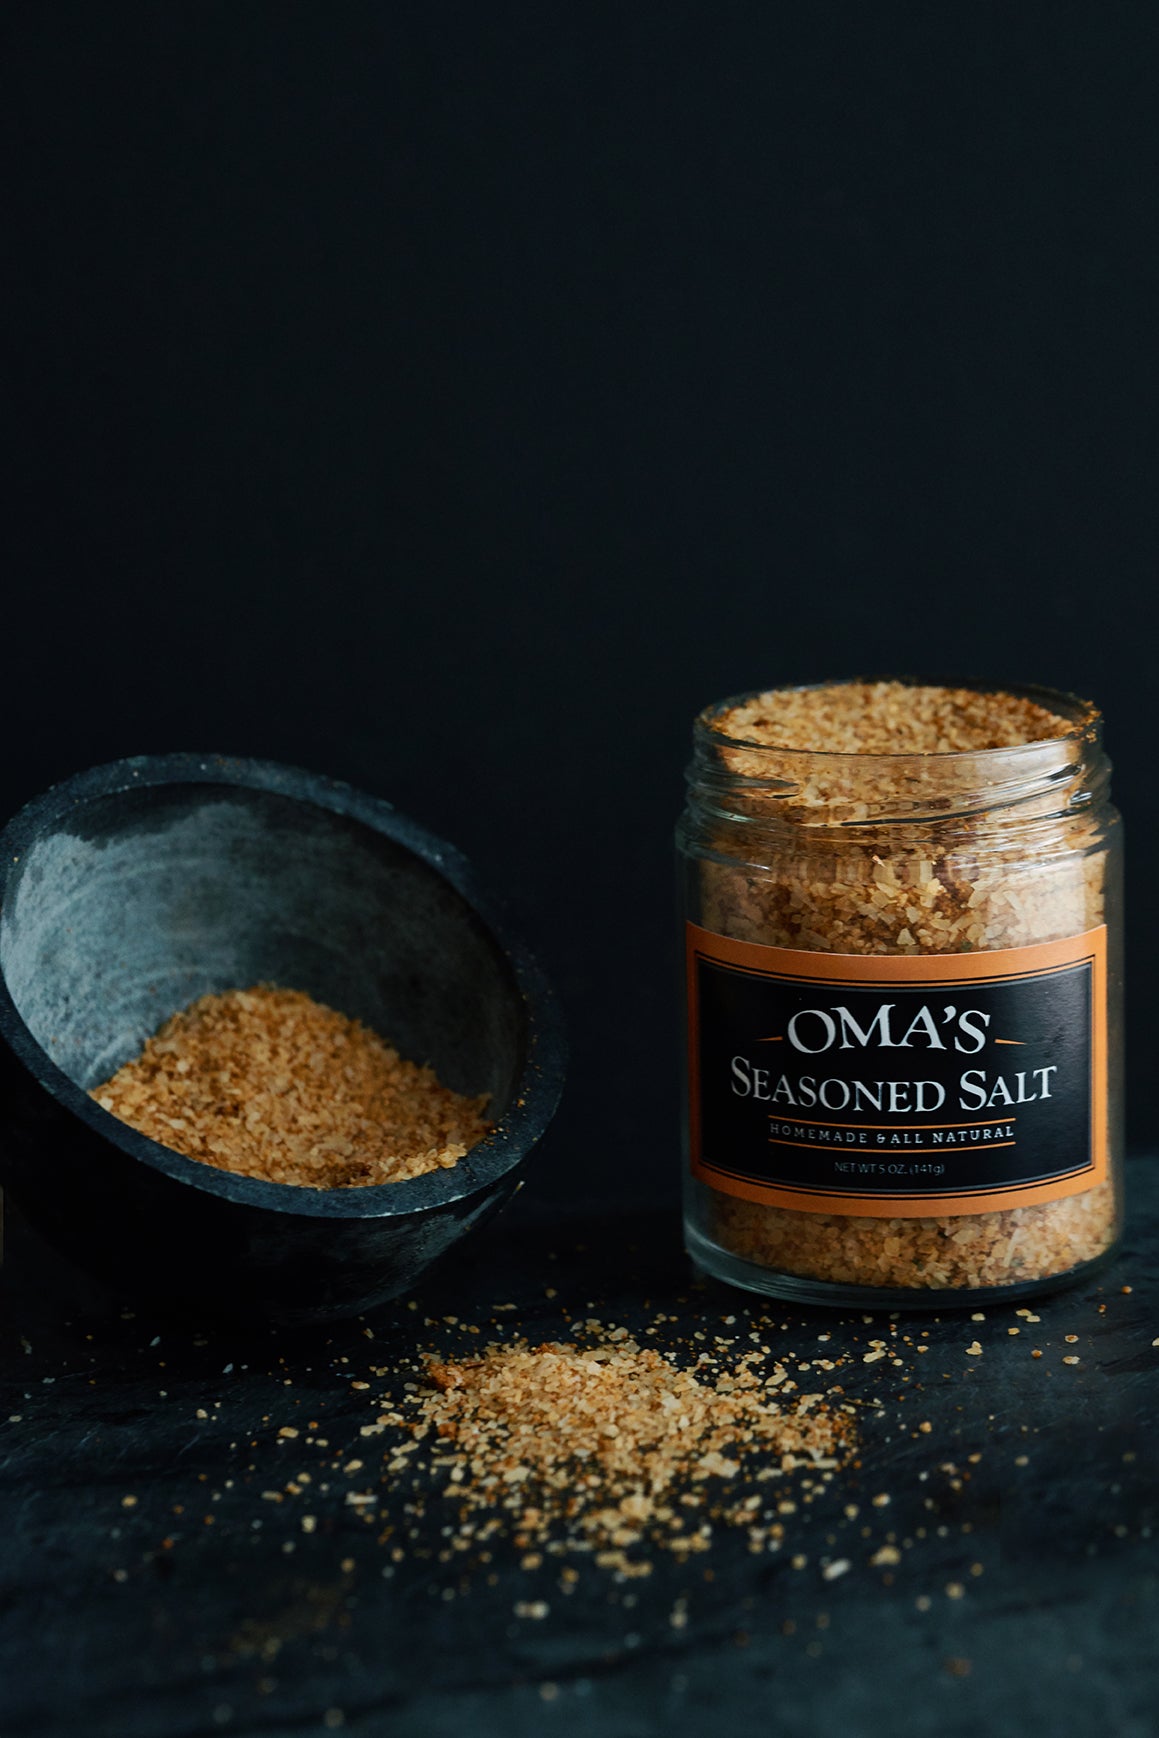 Oma's Seasoned Salt